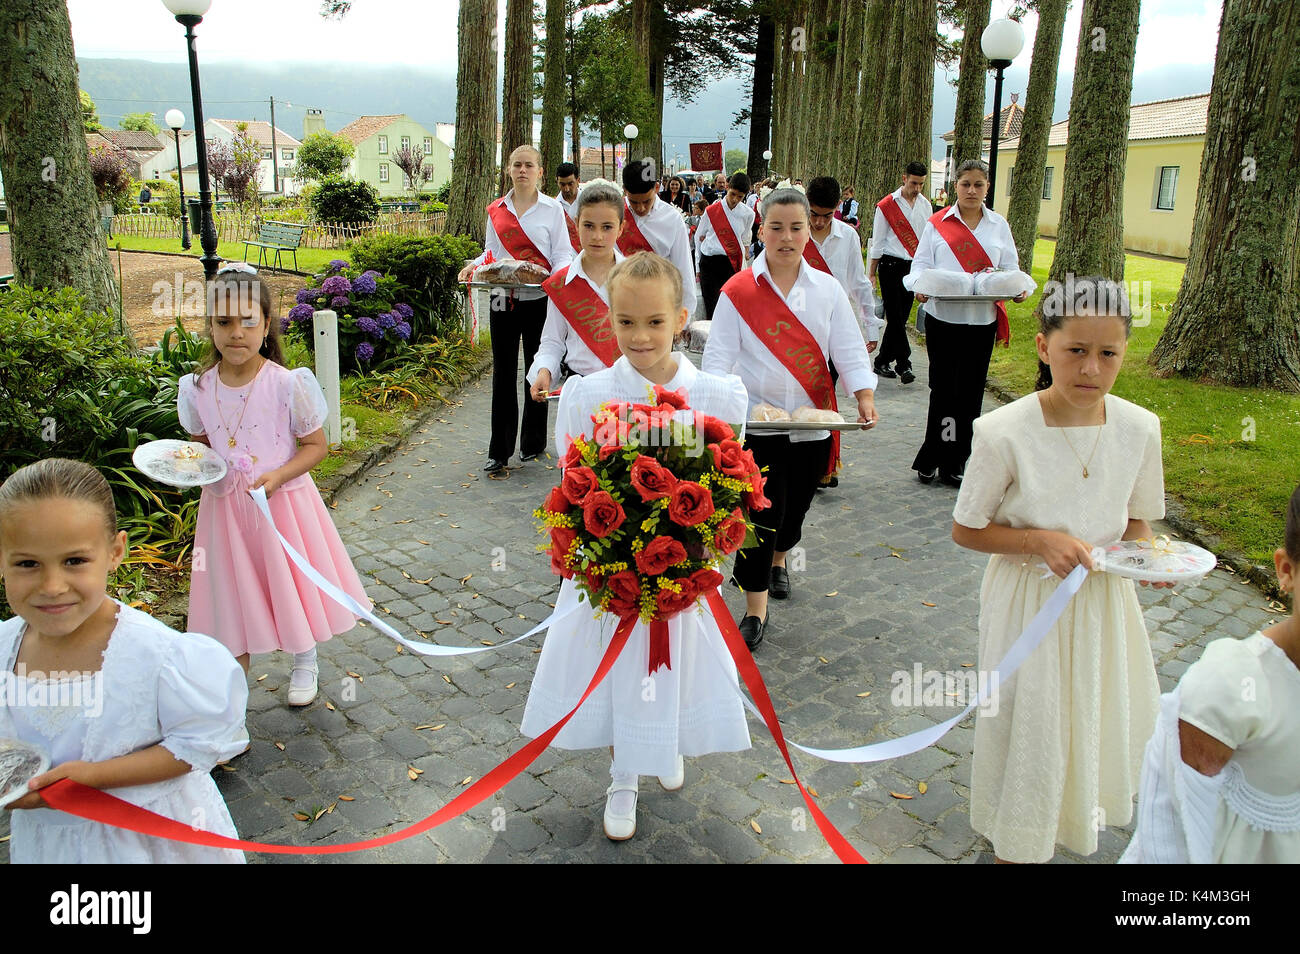 Festivités de l'Espírito Santo (Saint-Esprit). Sete Cidades. L''île de São Miguel, aux Açores. Portugal Banque D'Images